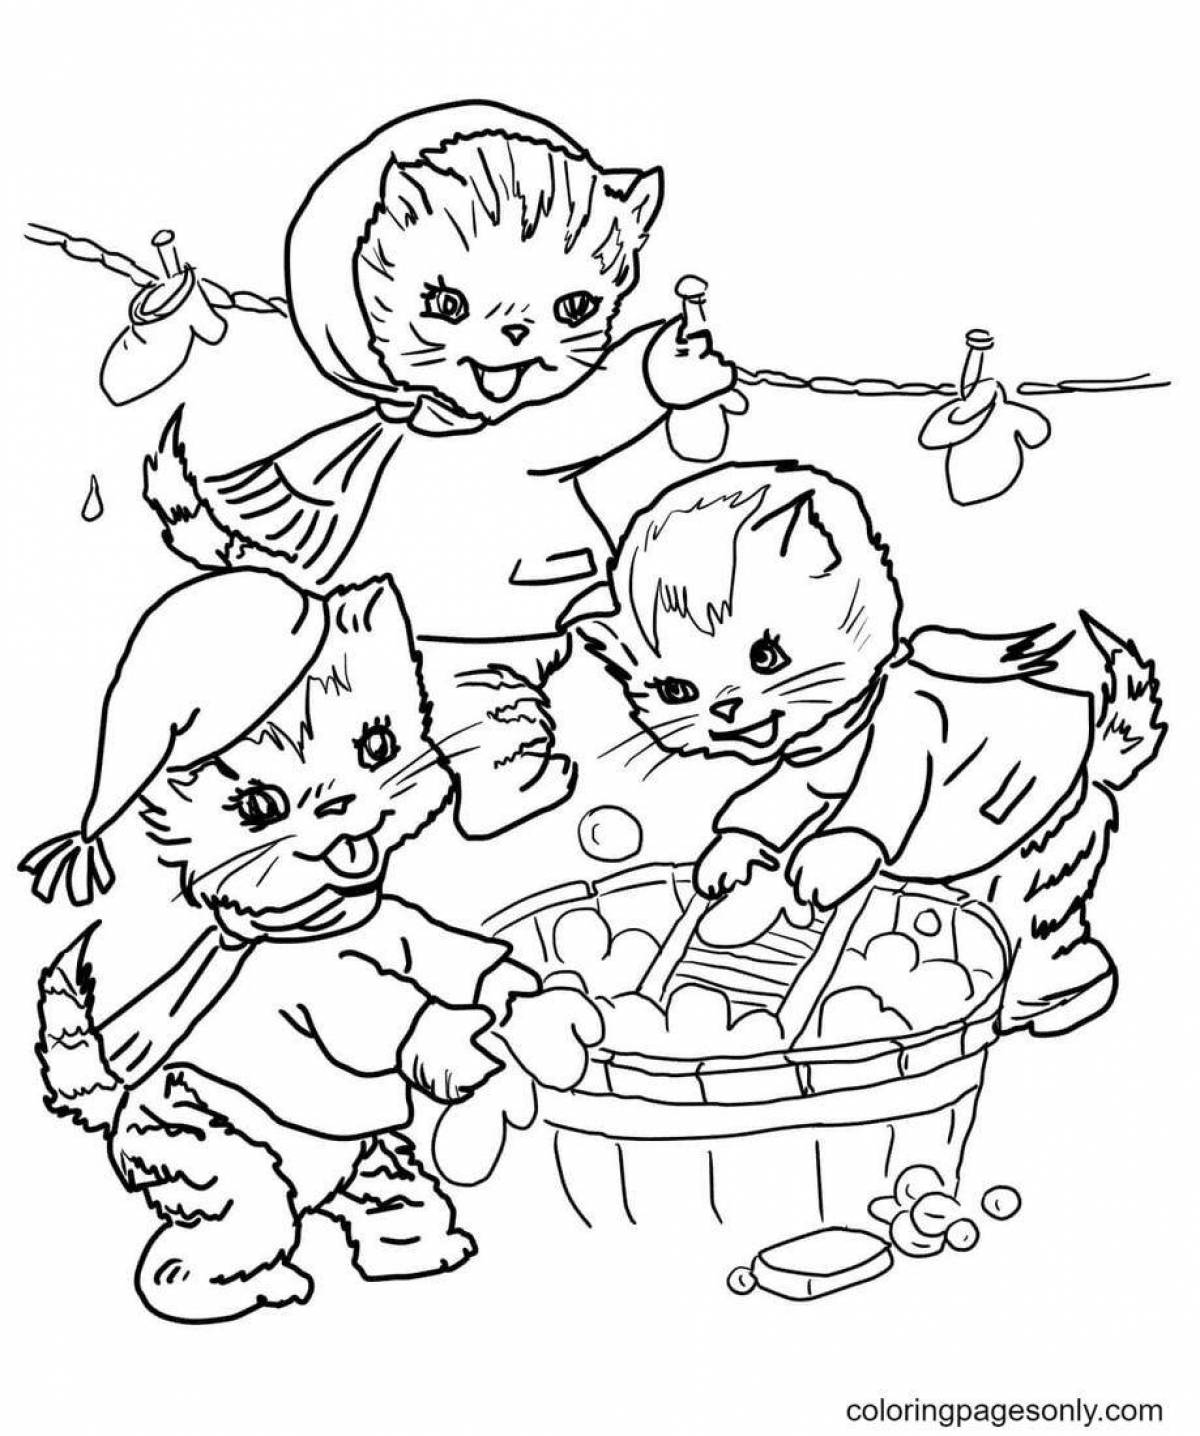 Sleepy kittens in a basket